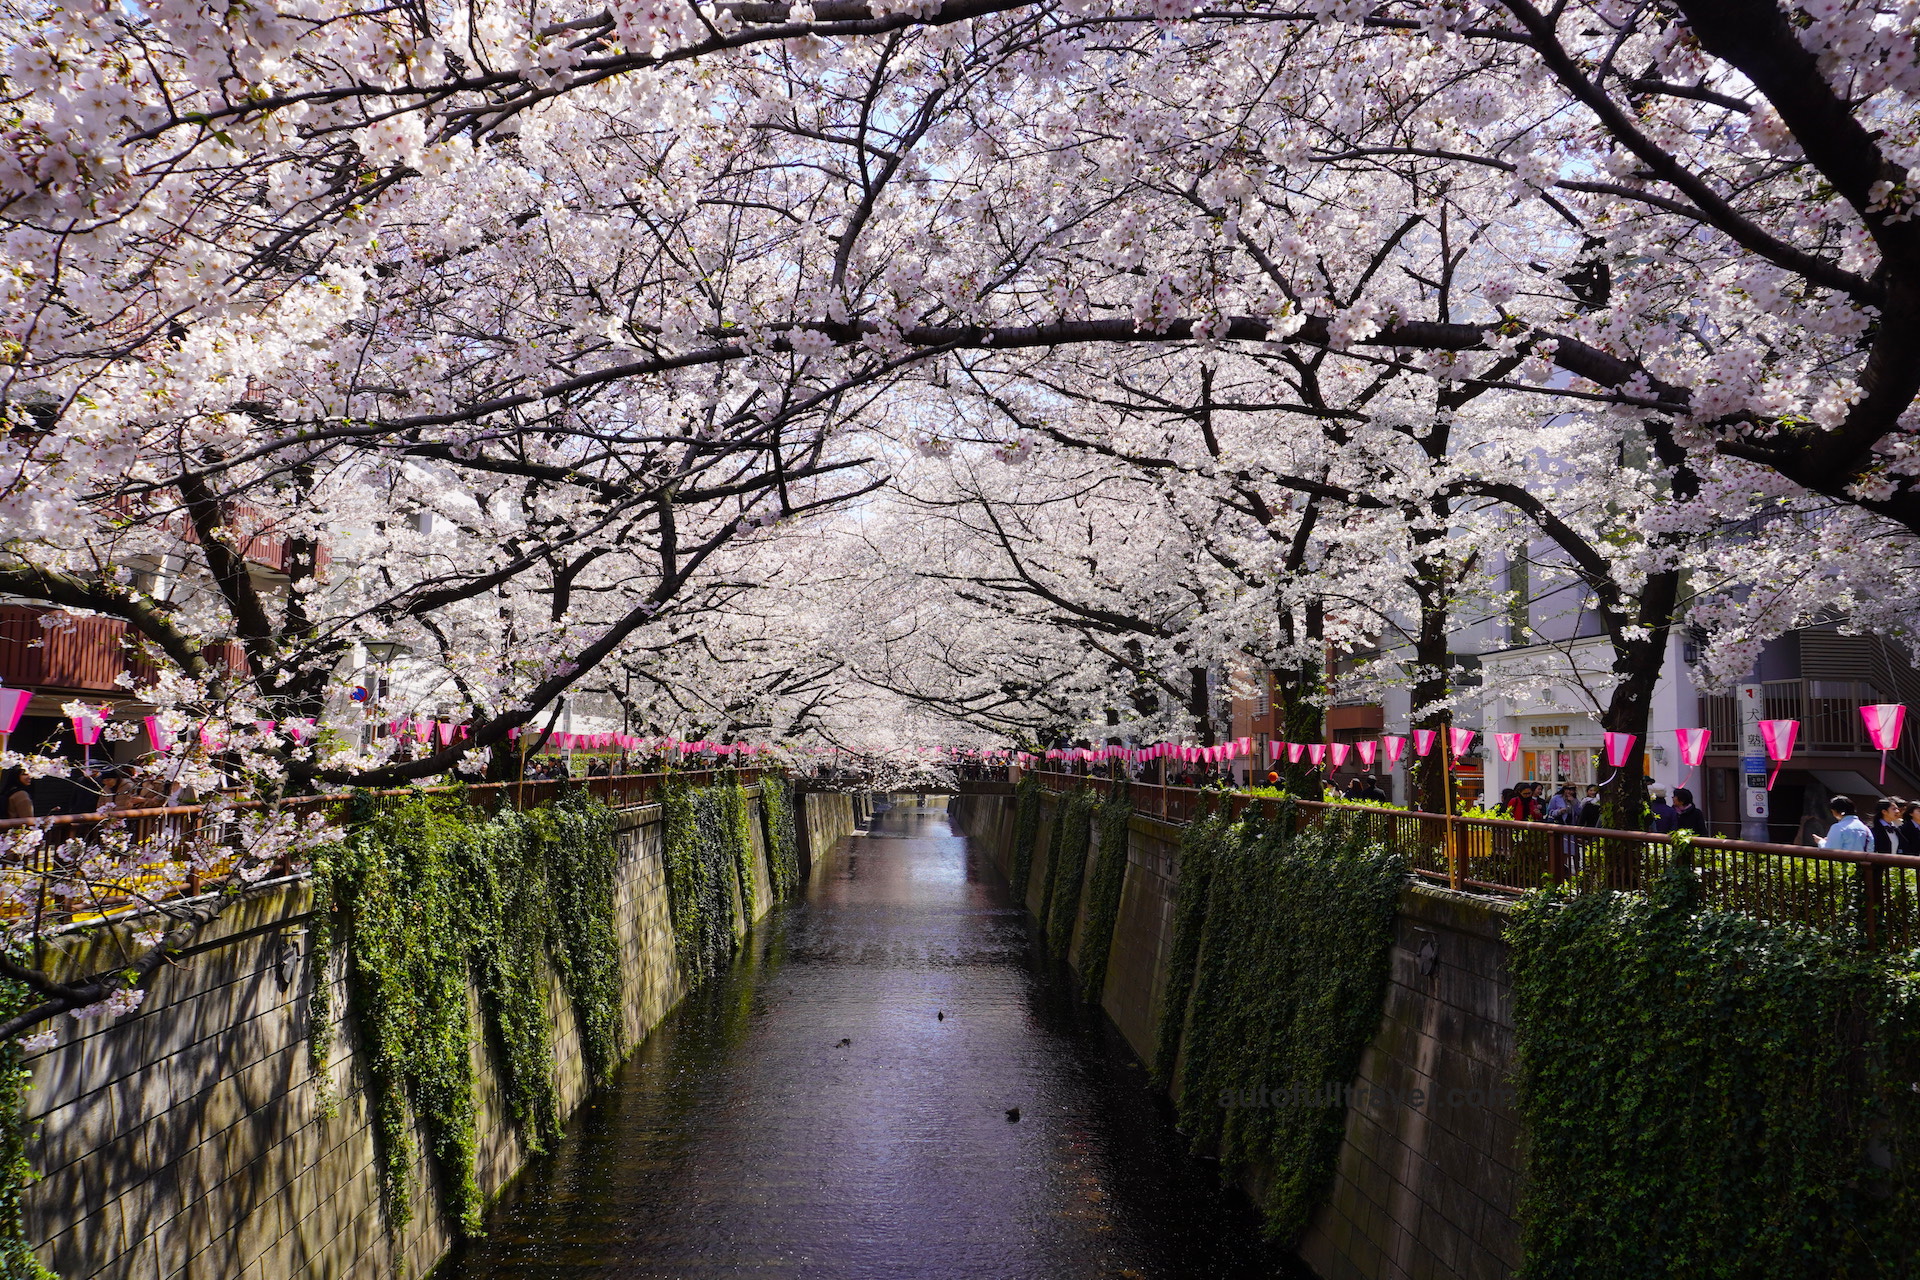 สองฝั่งแม่น้ำ เมกูโระ ชมซากุระกว่า 800 ต้น แหล่งท่องเที่ยวสุดฮิต ชานกรุงโตเกียว